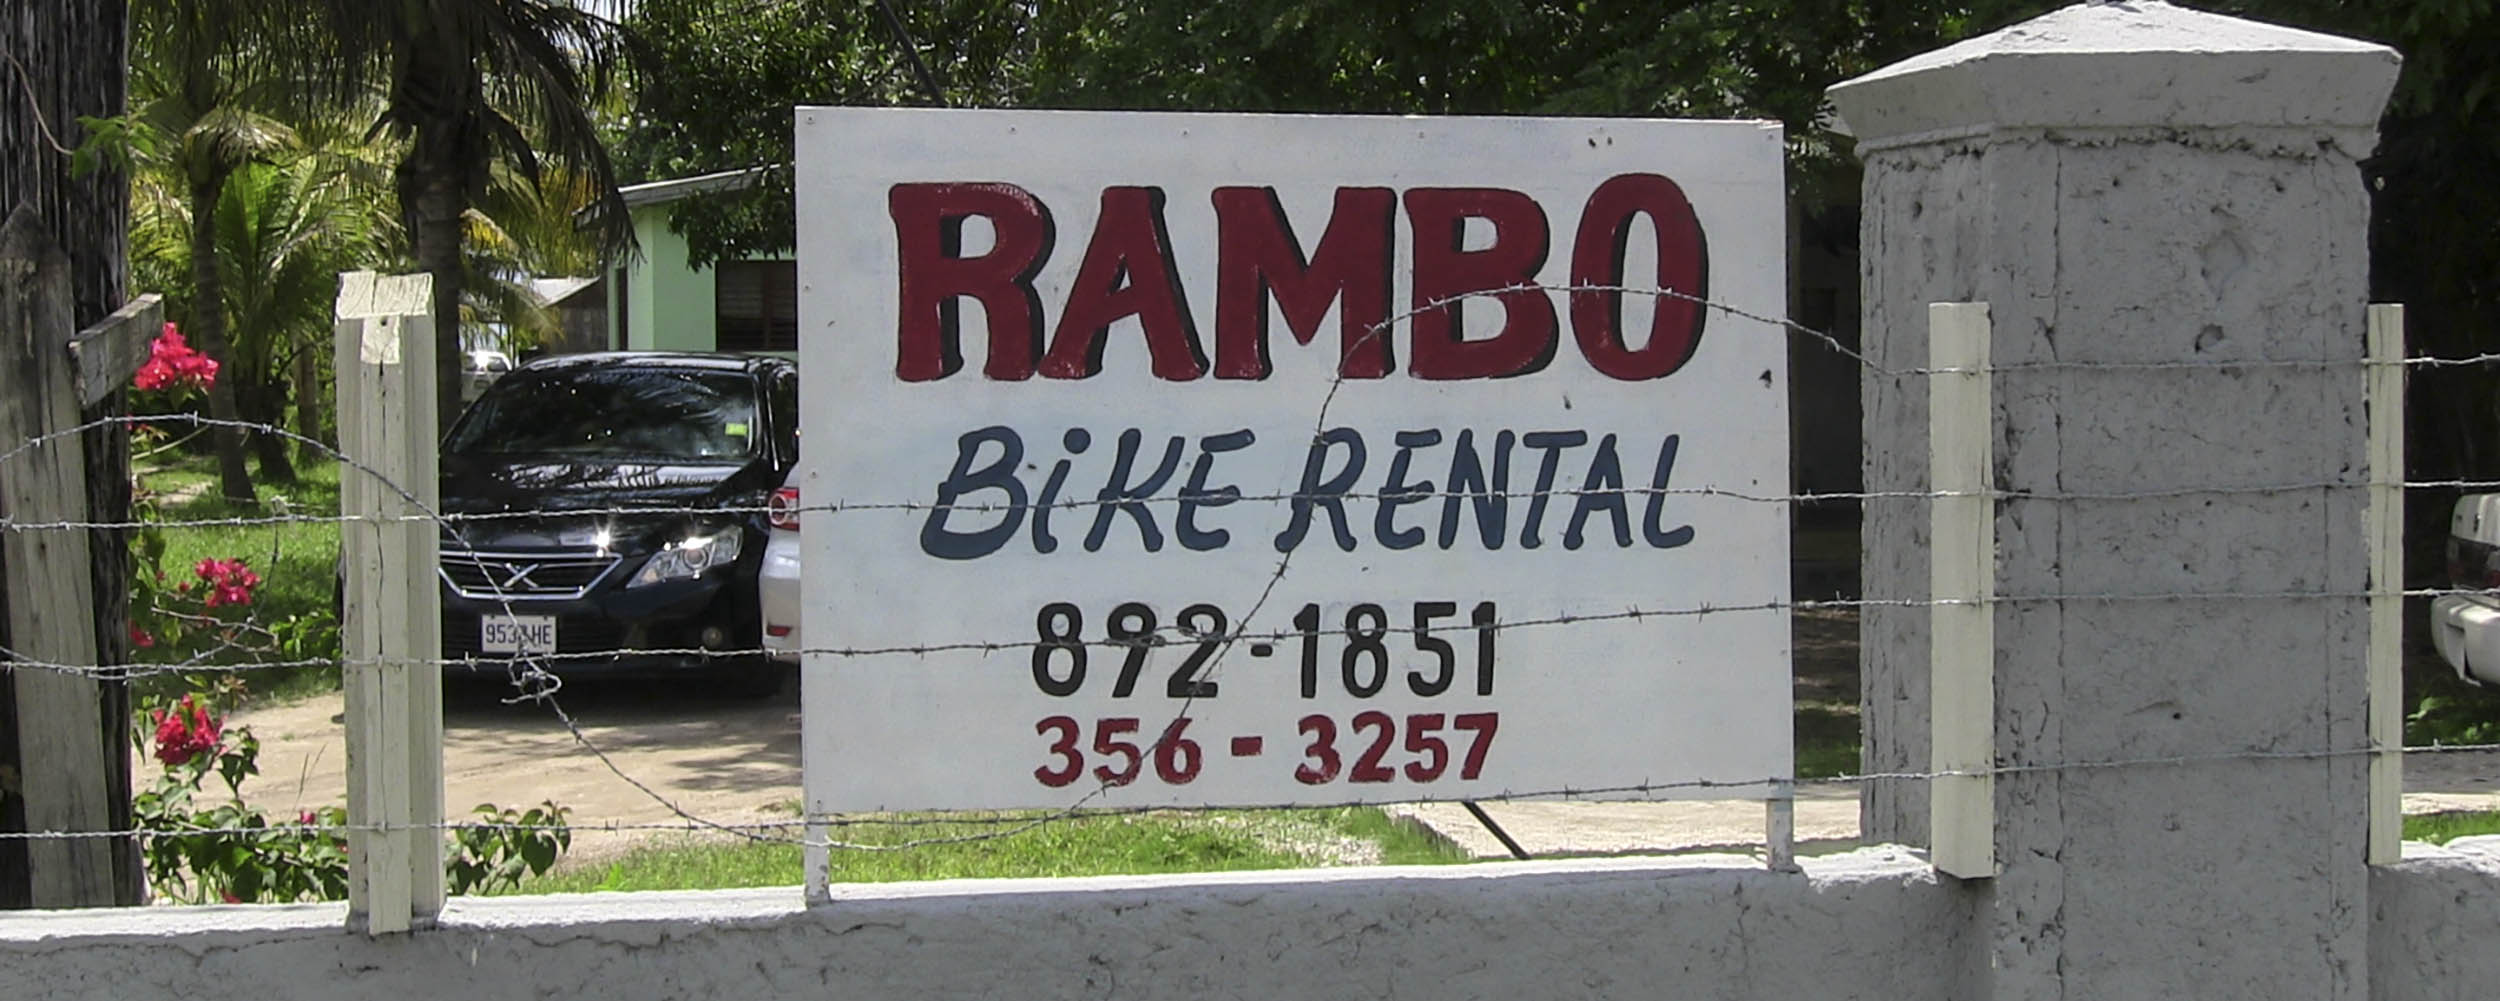 Rambo Bike Rental - Norman Manley Boulevard - Negril Jamaica